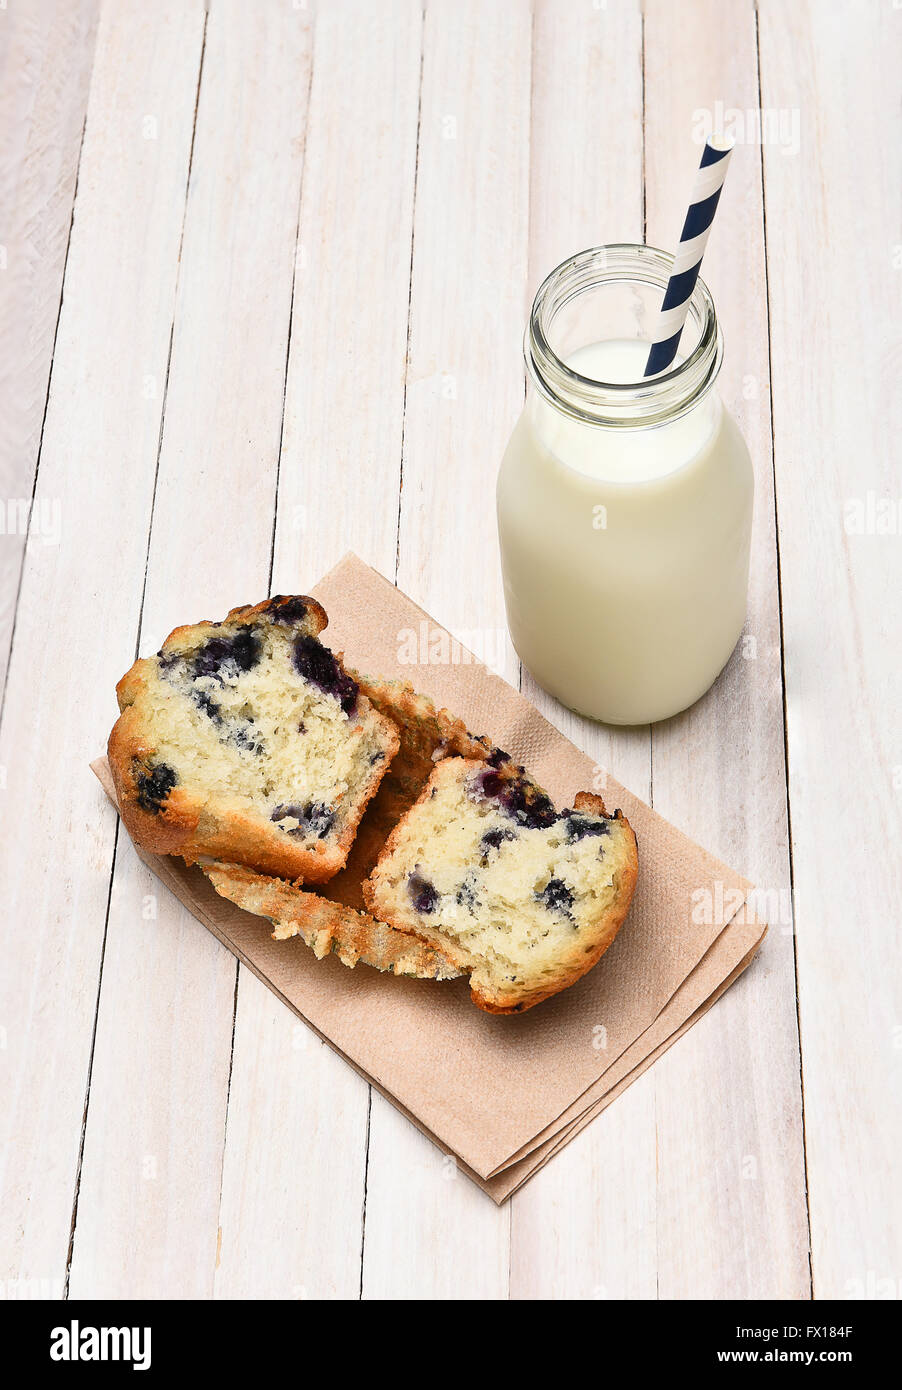 Portrait d'une myrtille muffin et bouteille de lait sur un tableau blanc rustique. Le muffin est cassé en deux sur une serviette. Vert Banque D'Images